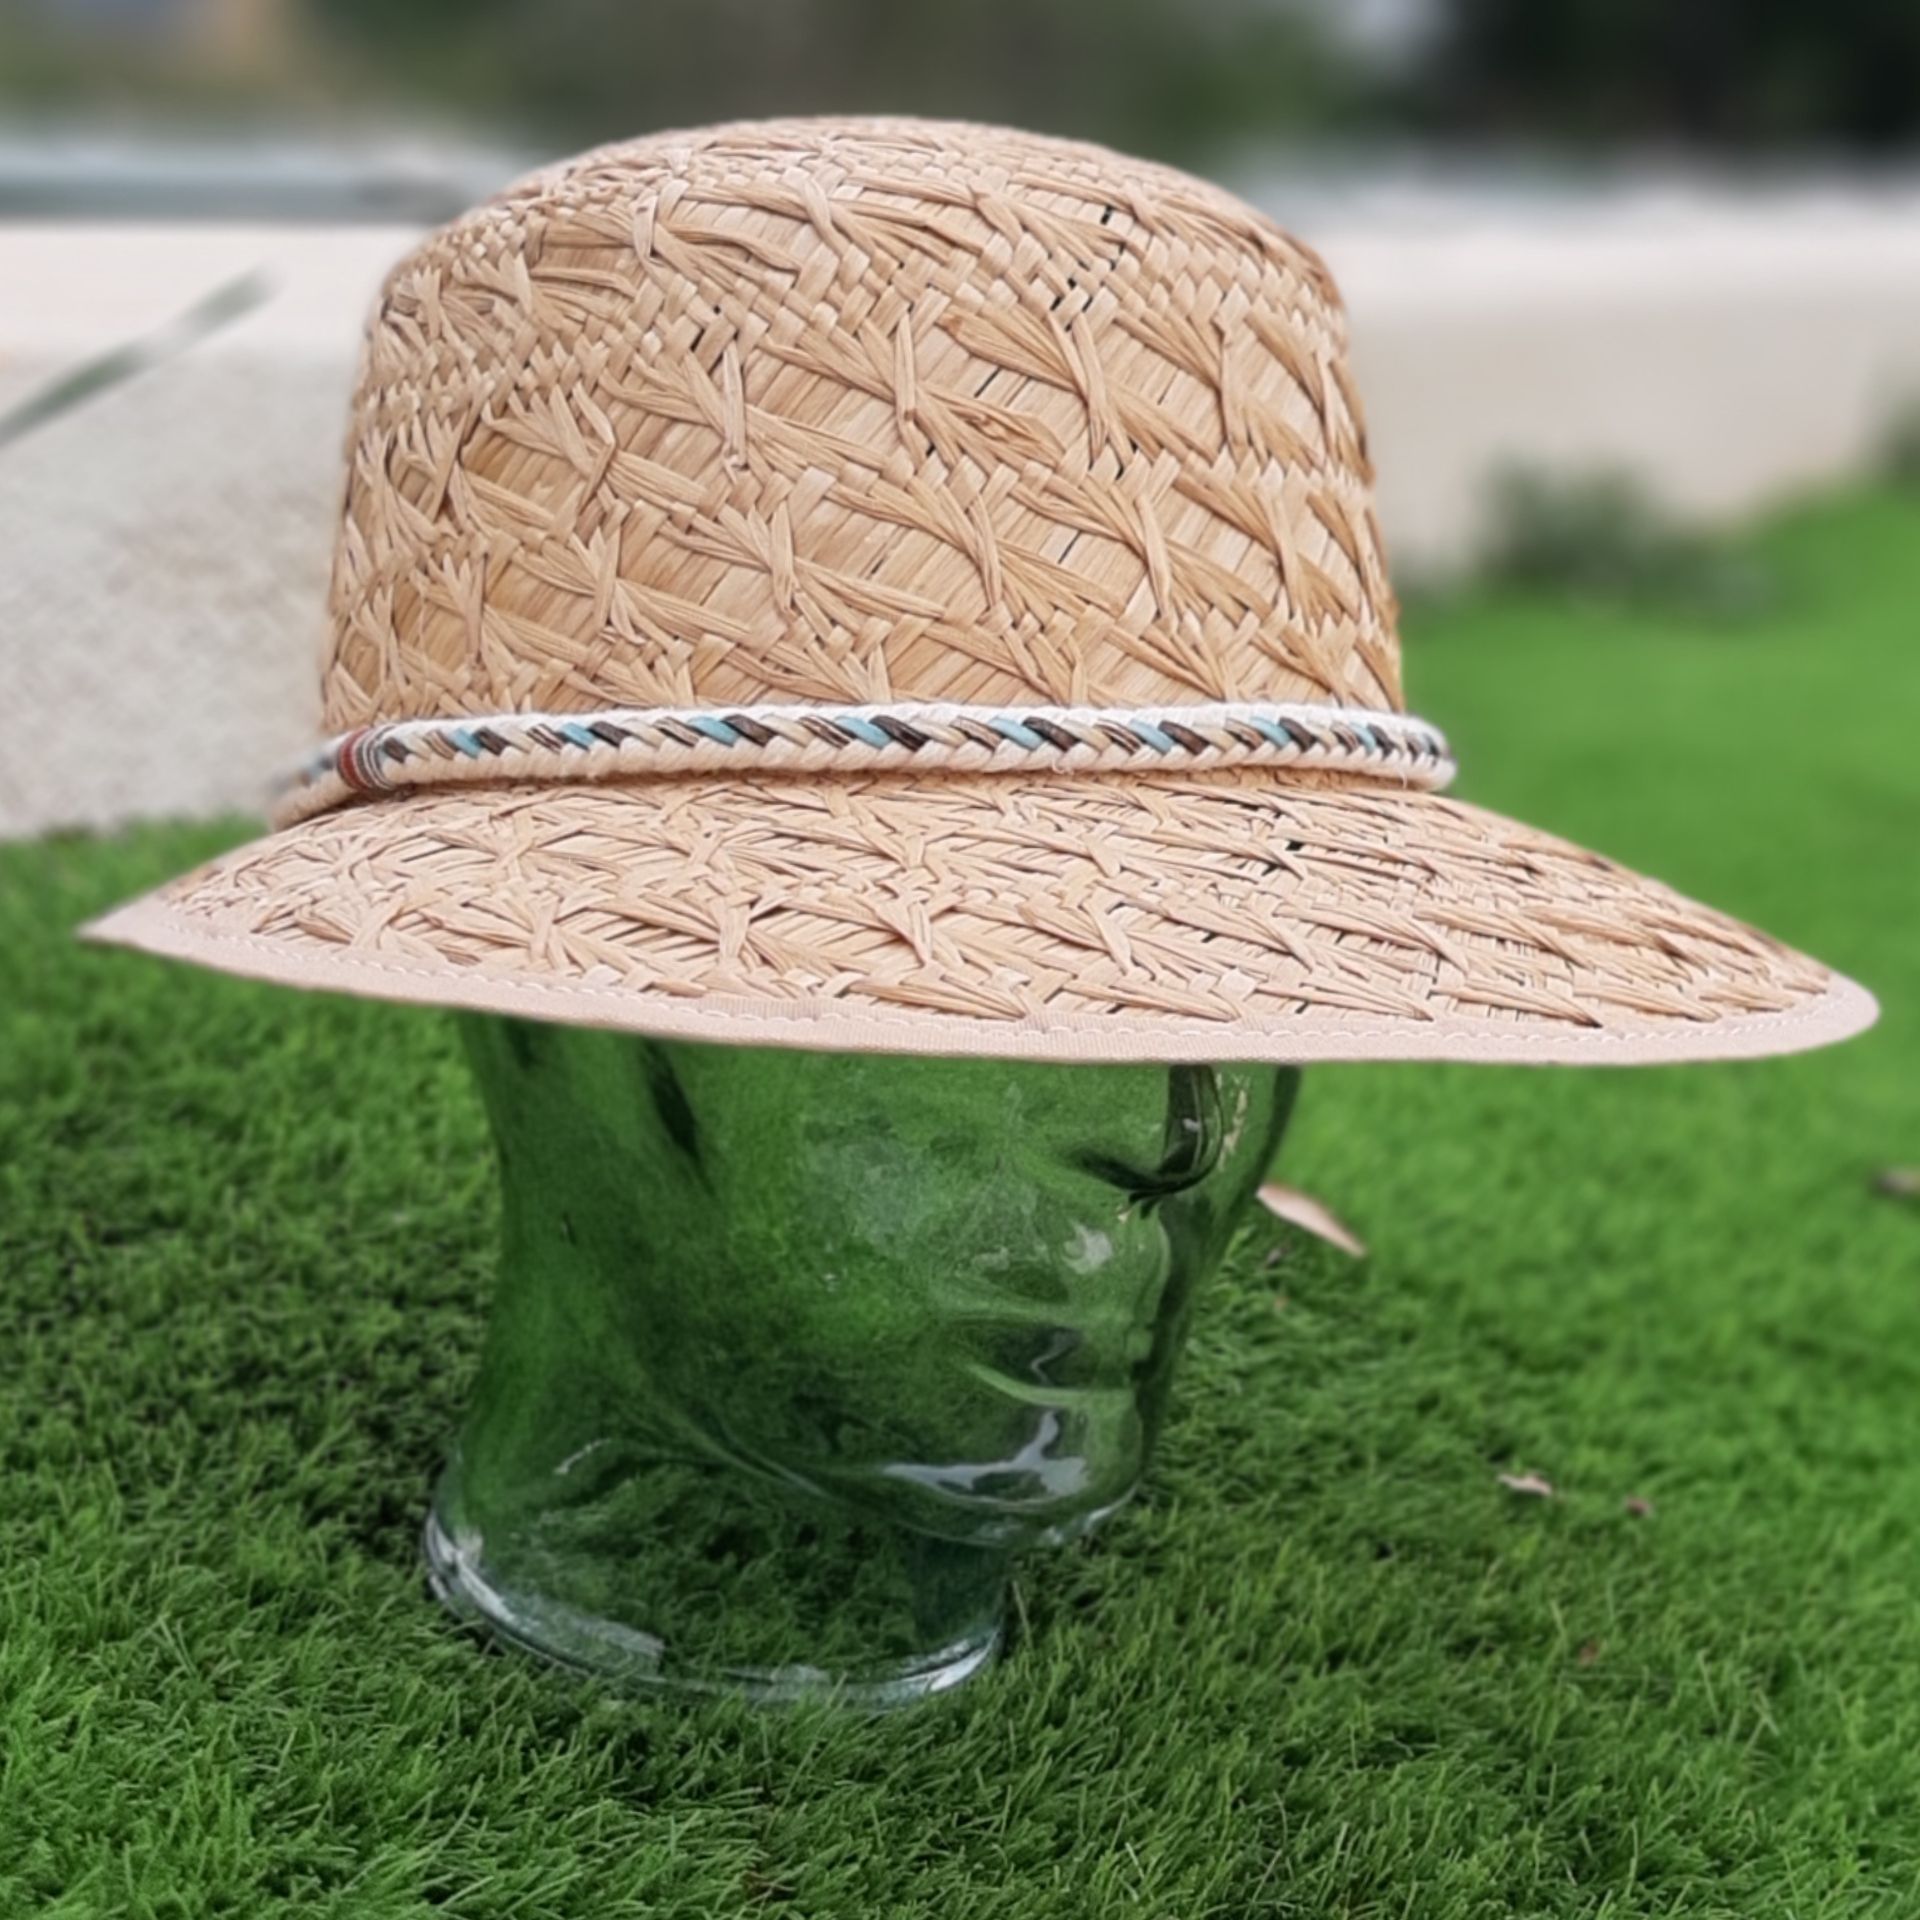 Sombrero paja | LUAR, joyas autor